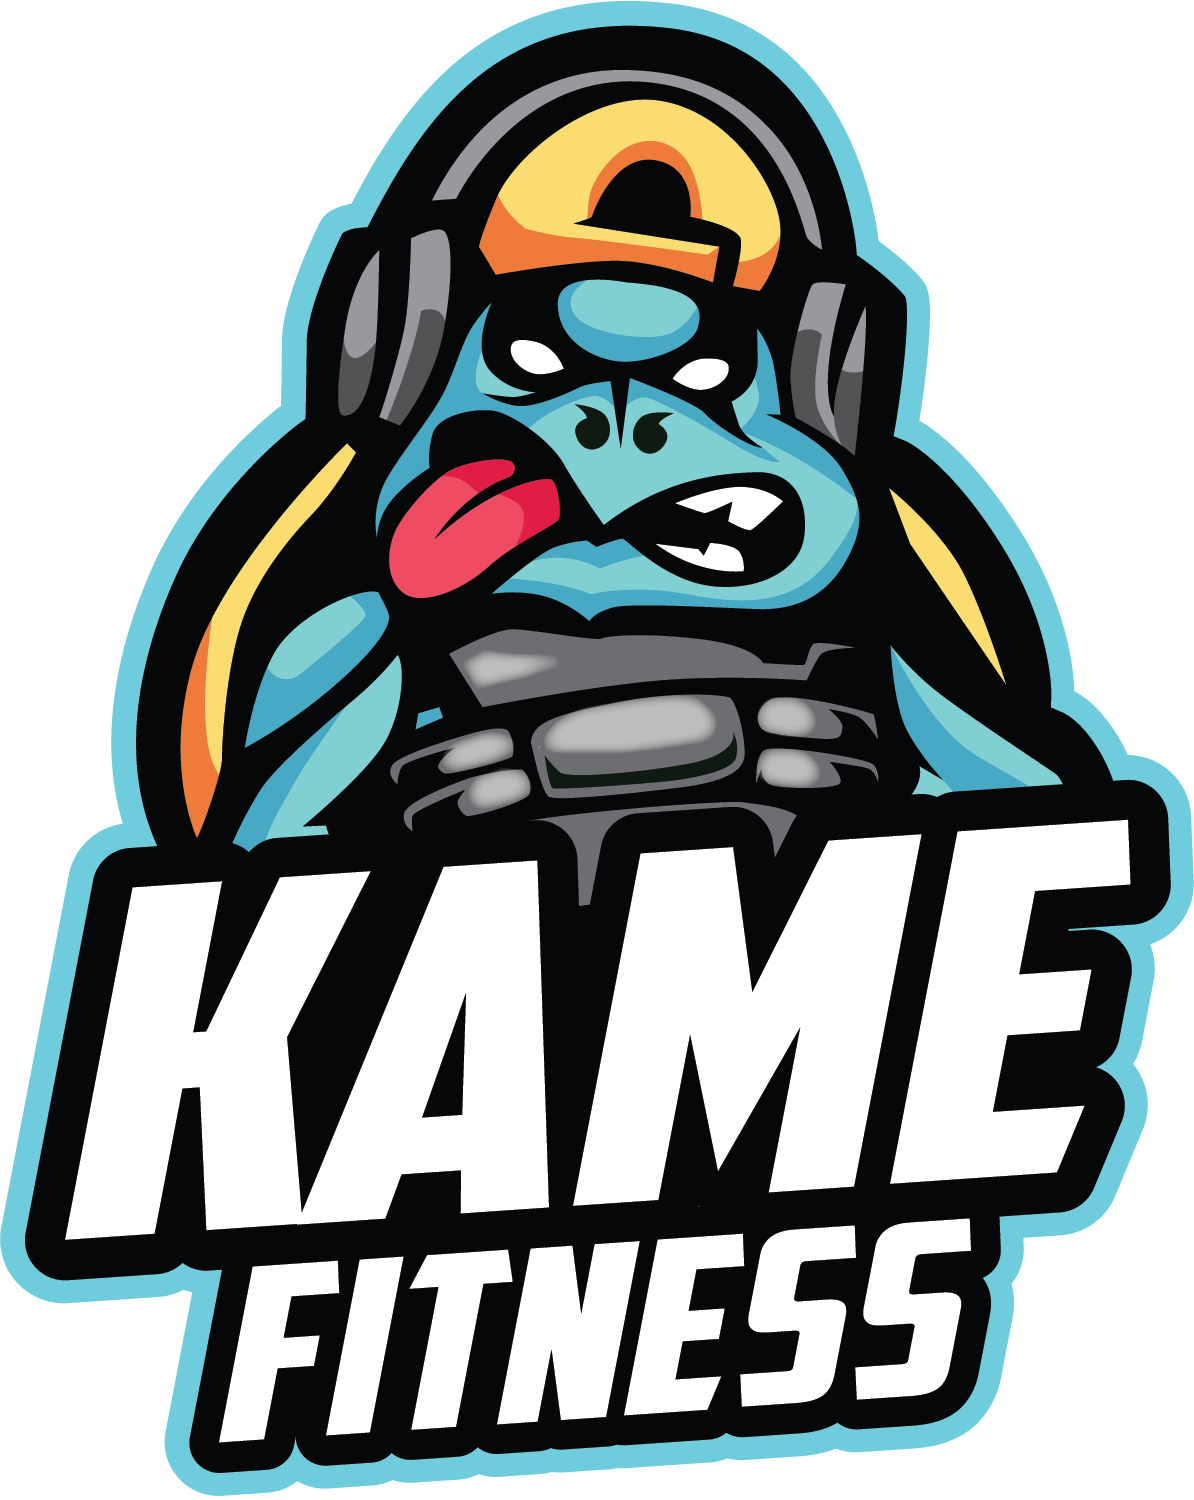 Kame Fitness